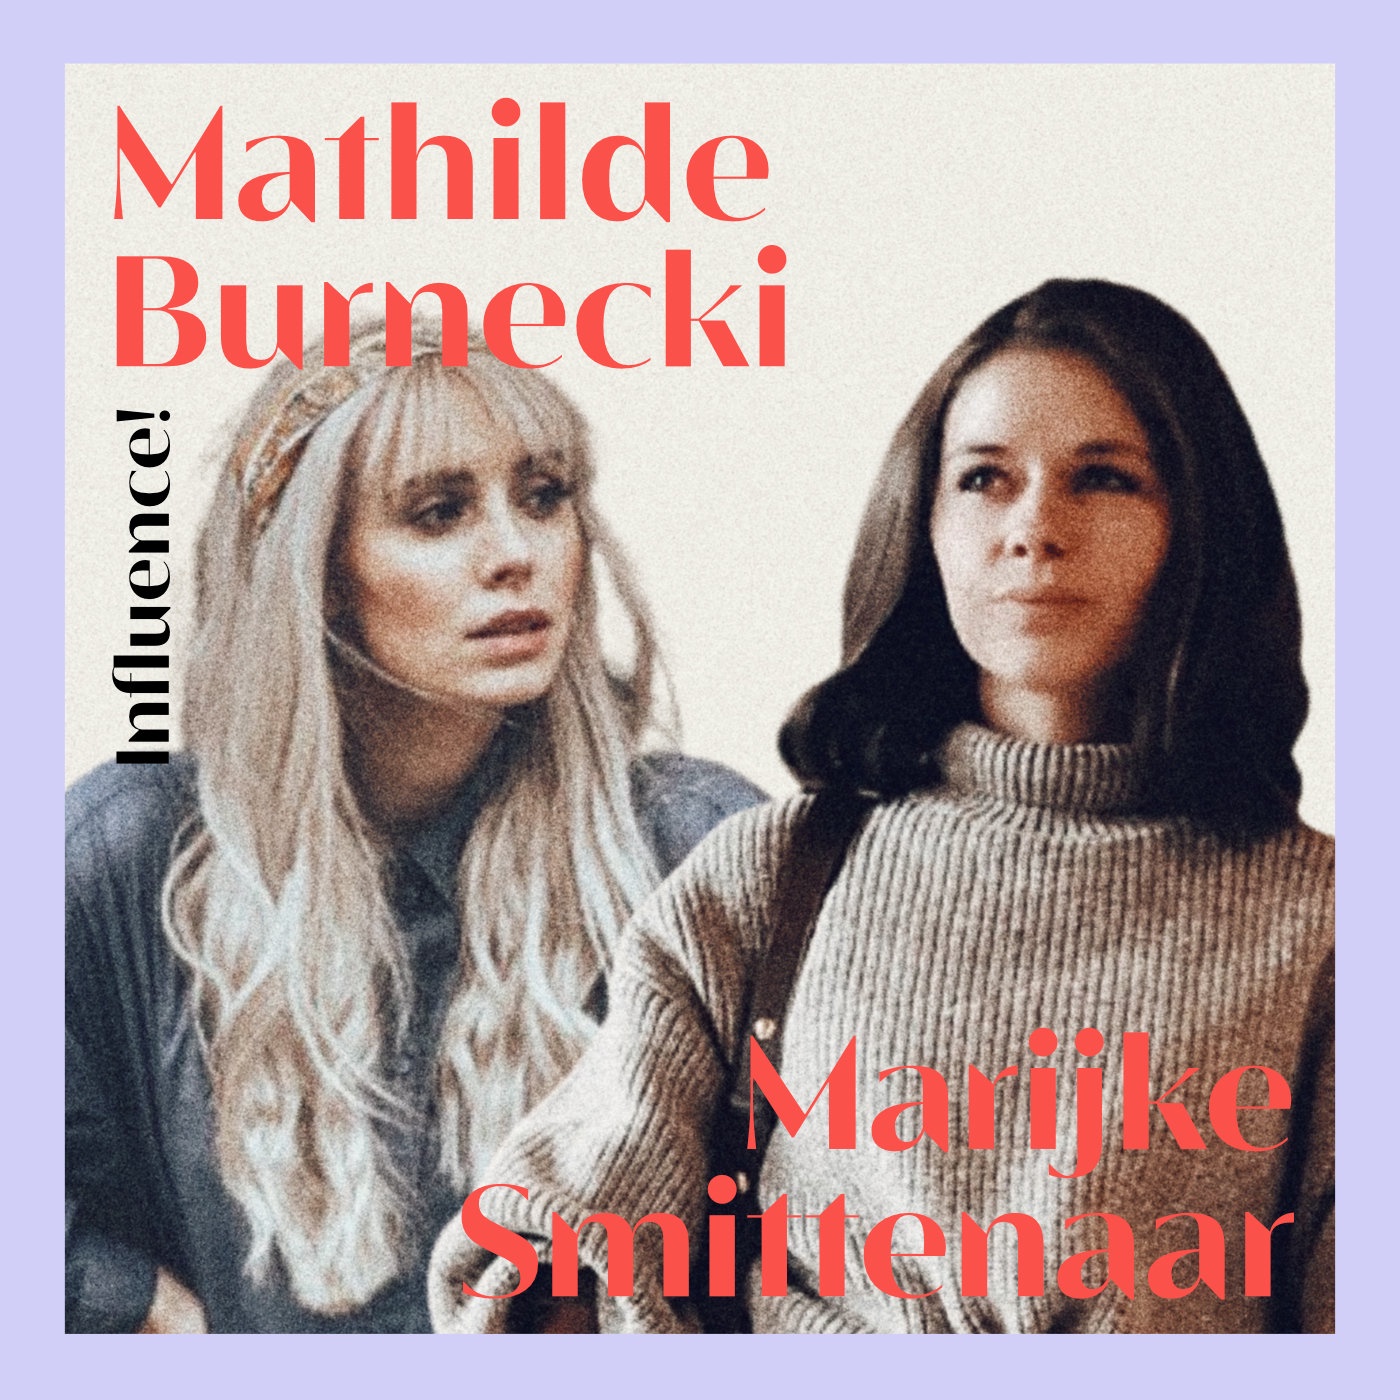 #80 | Mathilde Burnecki & Marijke Smittenaar, wo liegt die Zukunft für Instagram?